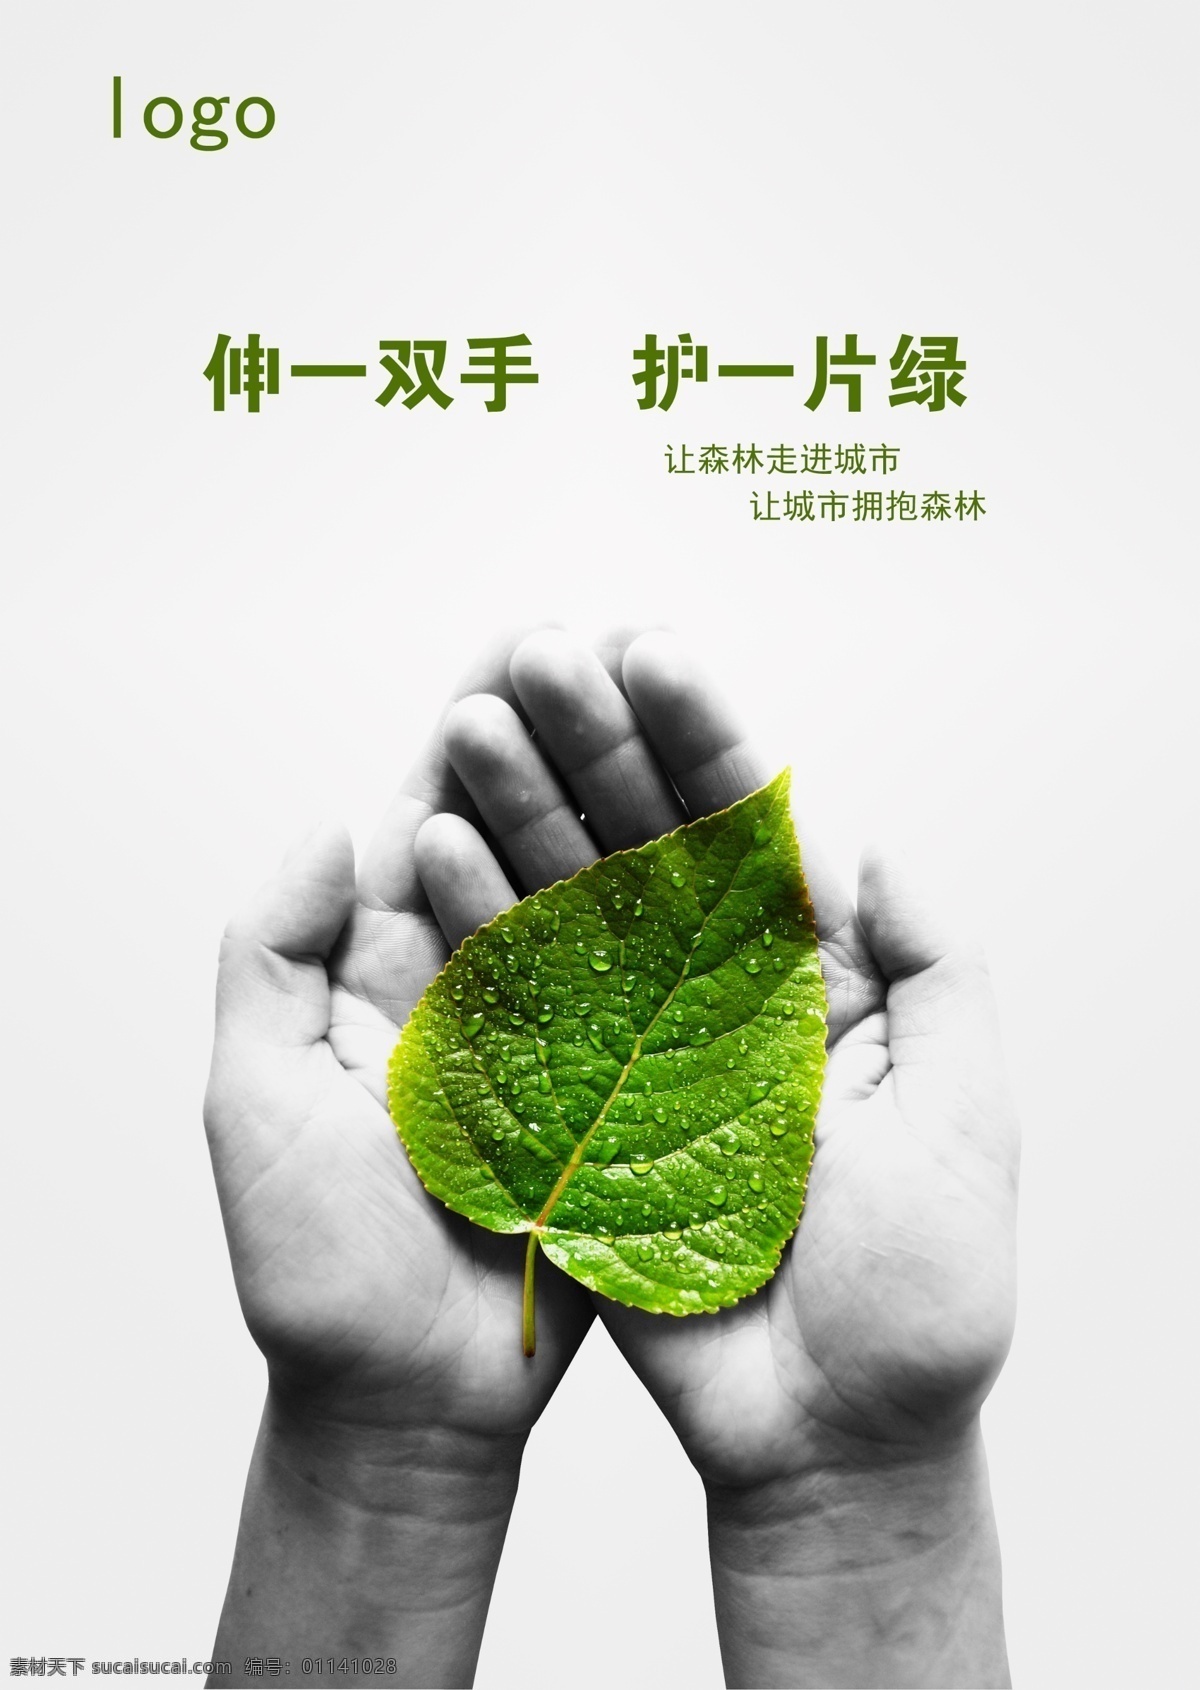 环保公益海报 公益海报 环保 公益 环境 保护 宣传 绿叶 森林 城市 双手 创意 分层 白色